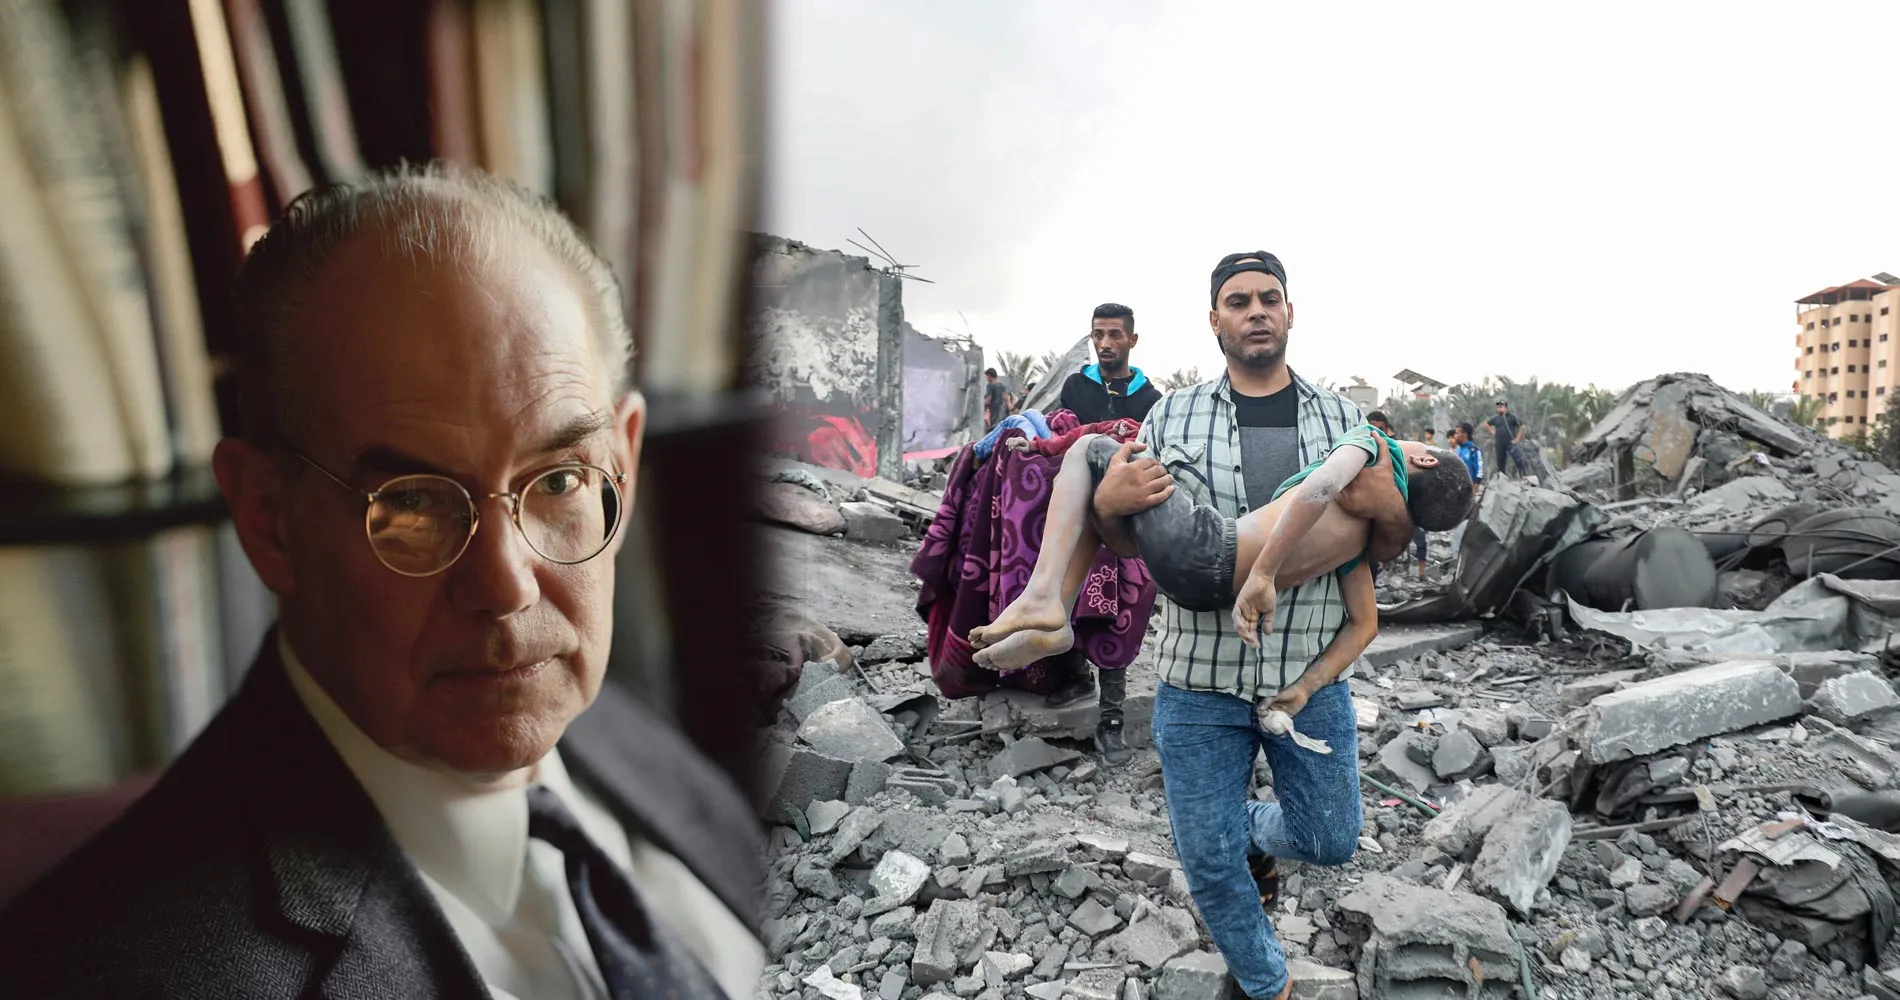 البروفيسور جون ميرشايمر يتحدث عن الإبادة الجماعية في غزة